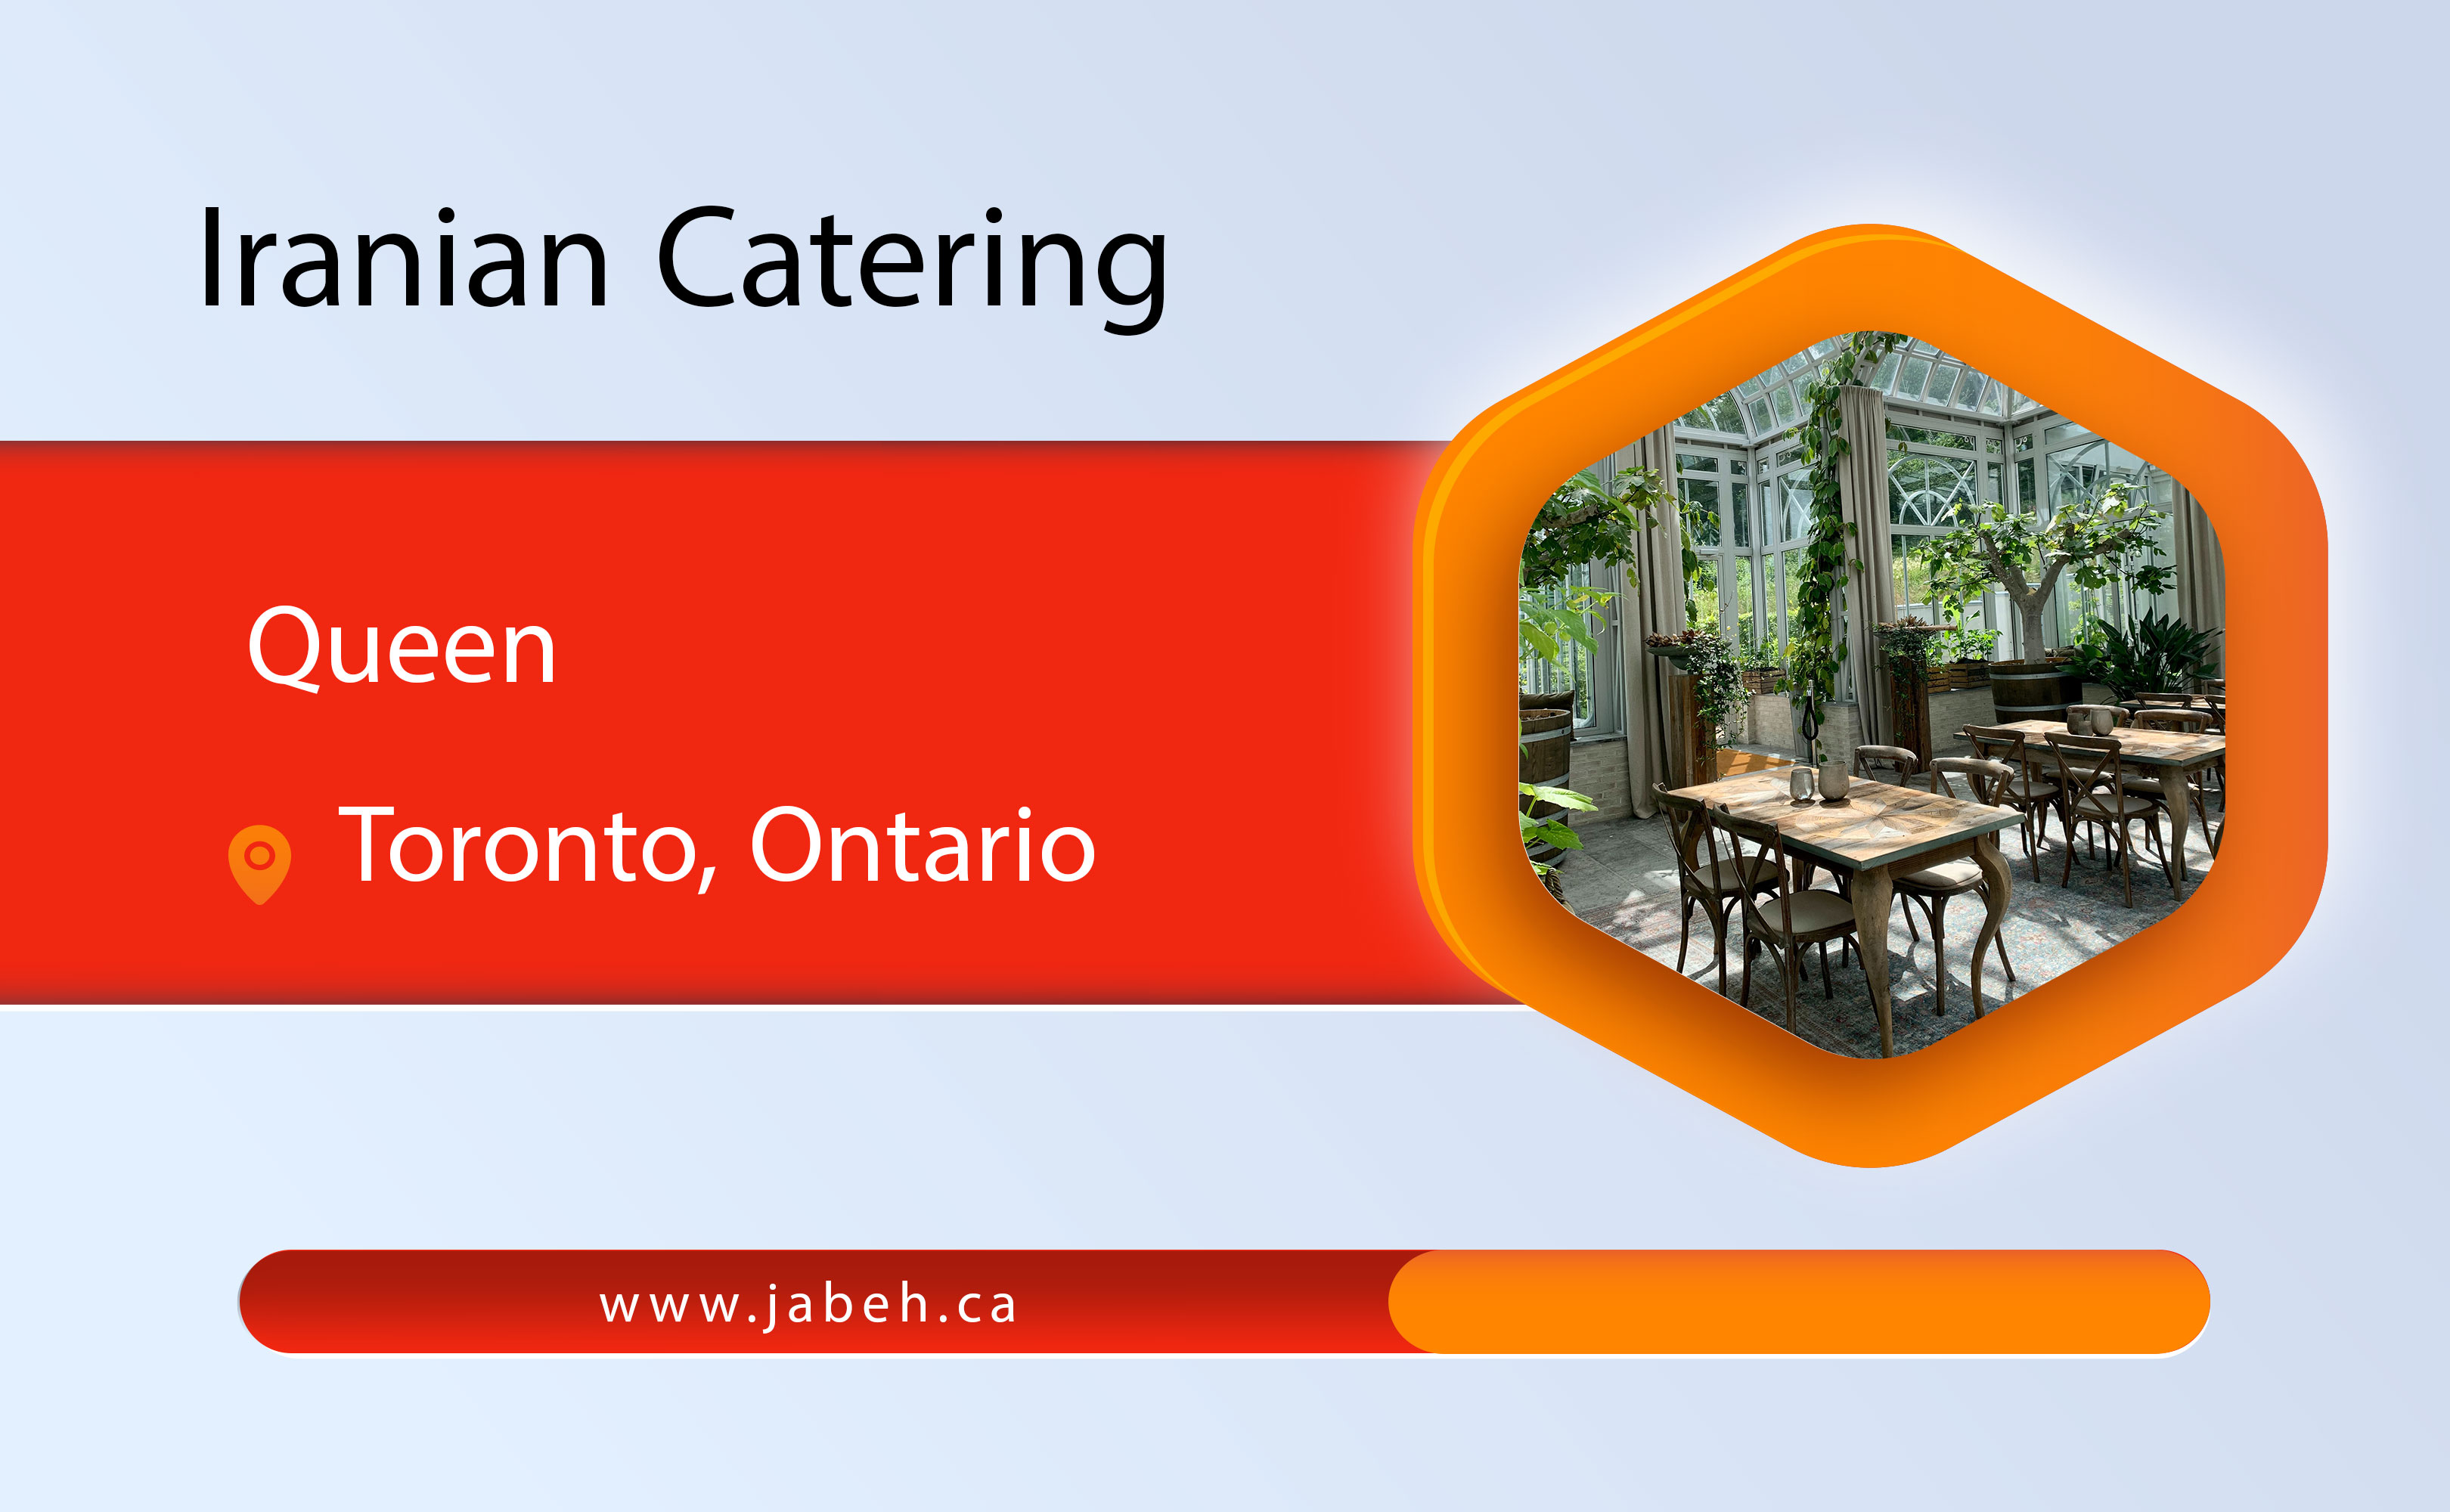 Queen Iranian Catering in Toronto, Ontario